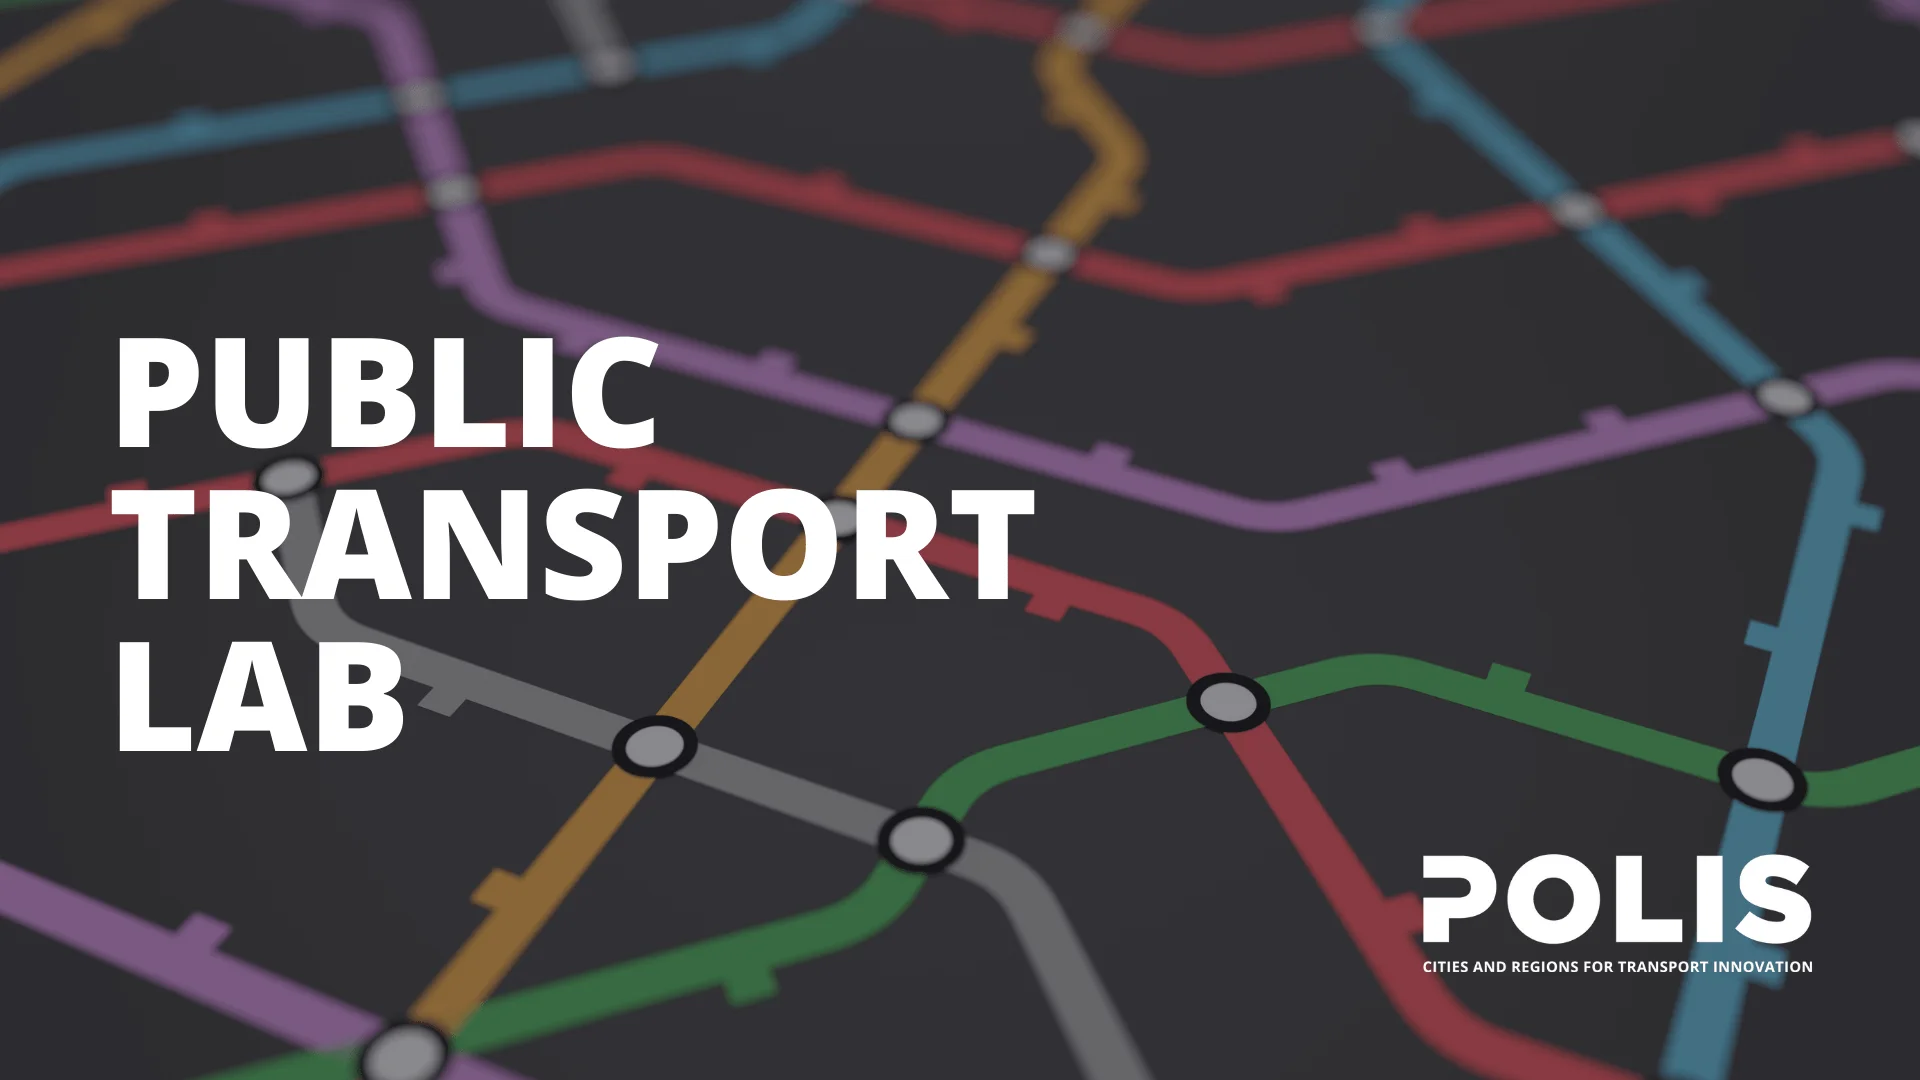 POLIS’ Public Transport Lab ends, but the dialogue continues